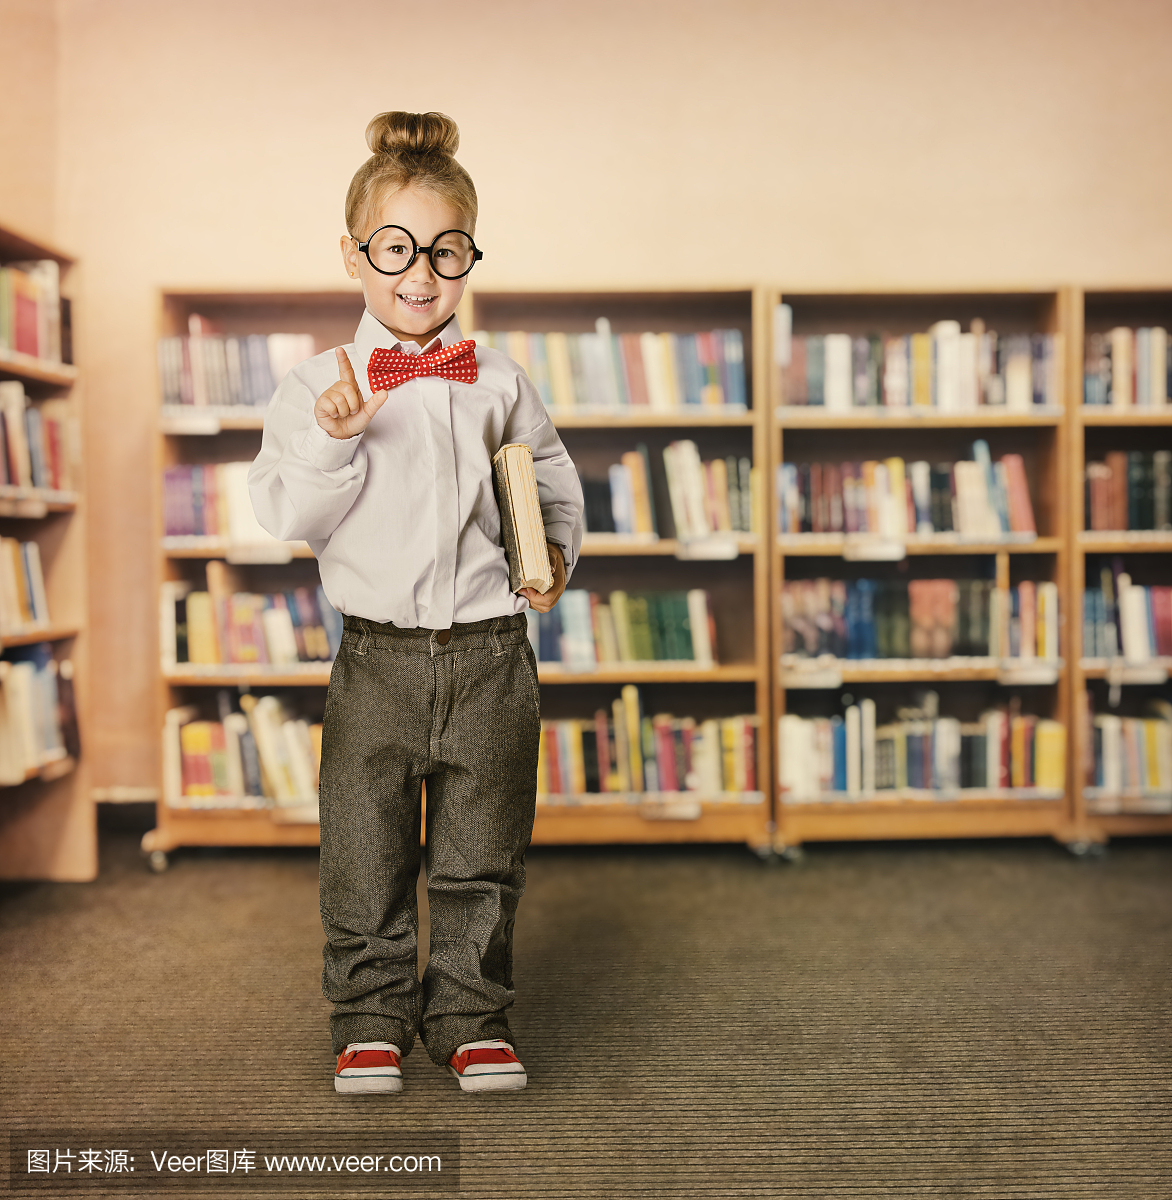 学校儿童图书馆,儿童眼镜与书,女学生